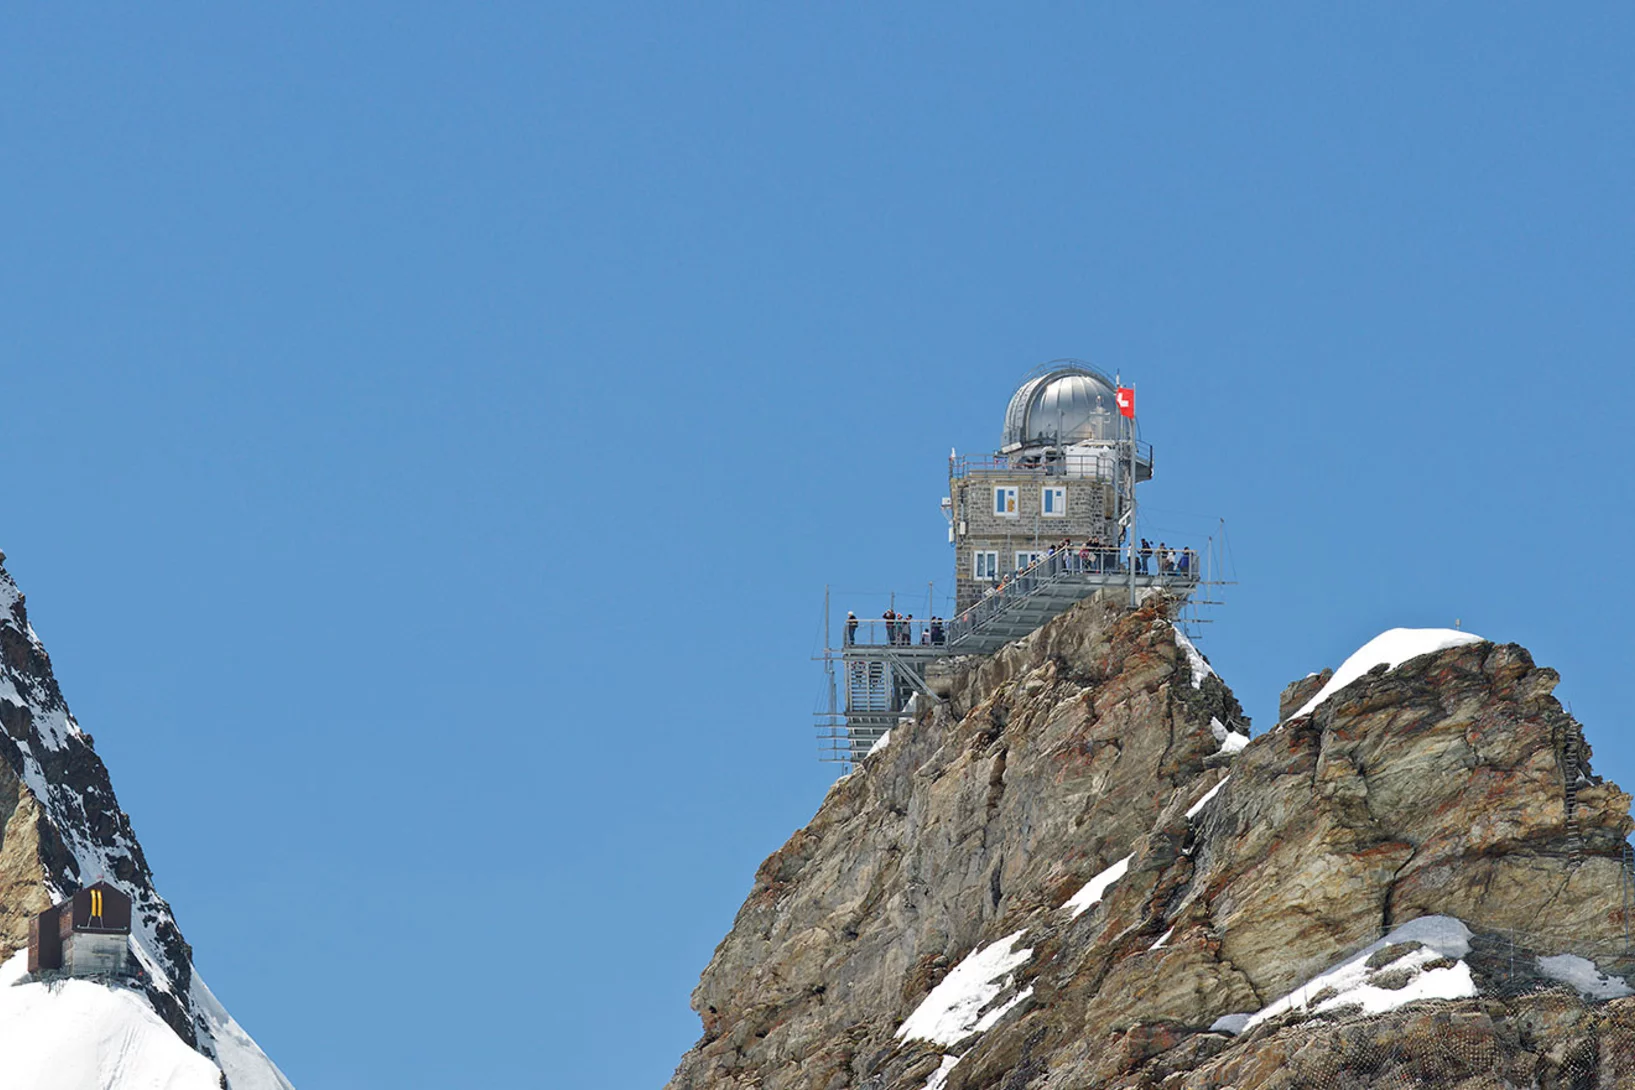 Le Jungfraujoch et son emblème caractéristique: l’Observatoire du Sphinx, inauguré en 1937. C’est là que se trouvent les instruments de mesure du PSI.